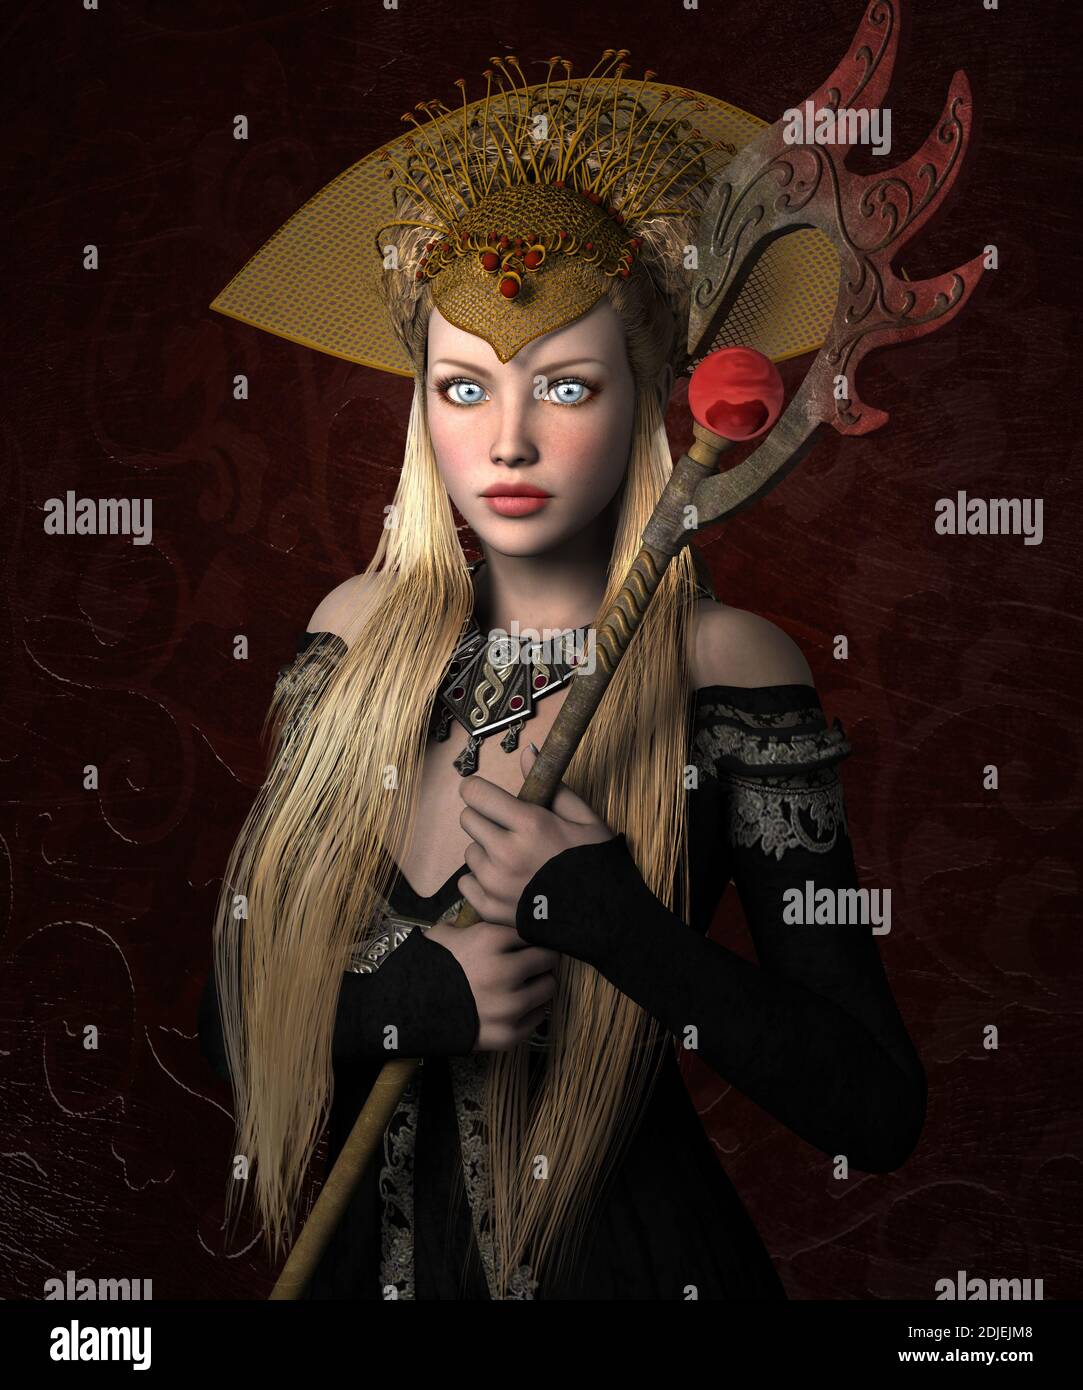 Jeune reine blonde médiévale avec des yeux bleus tenant un sceptre Banque D'Images